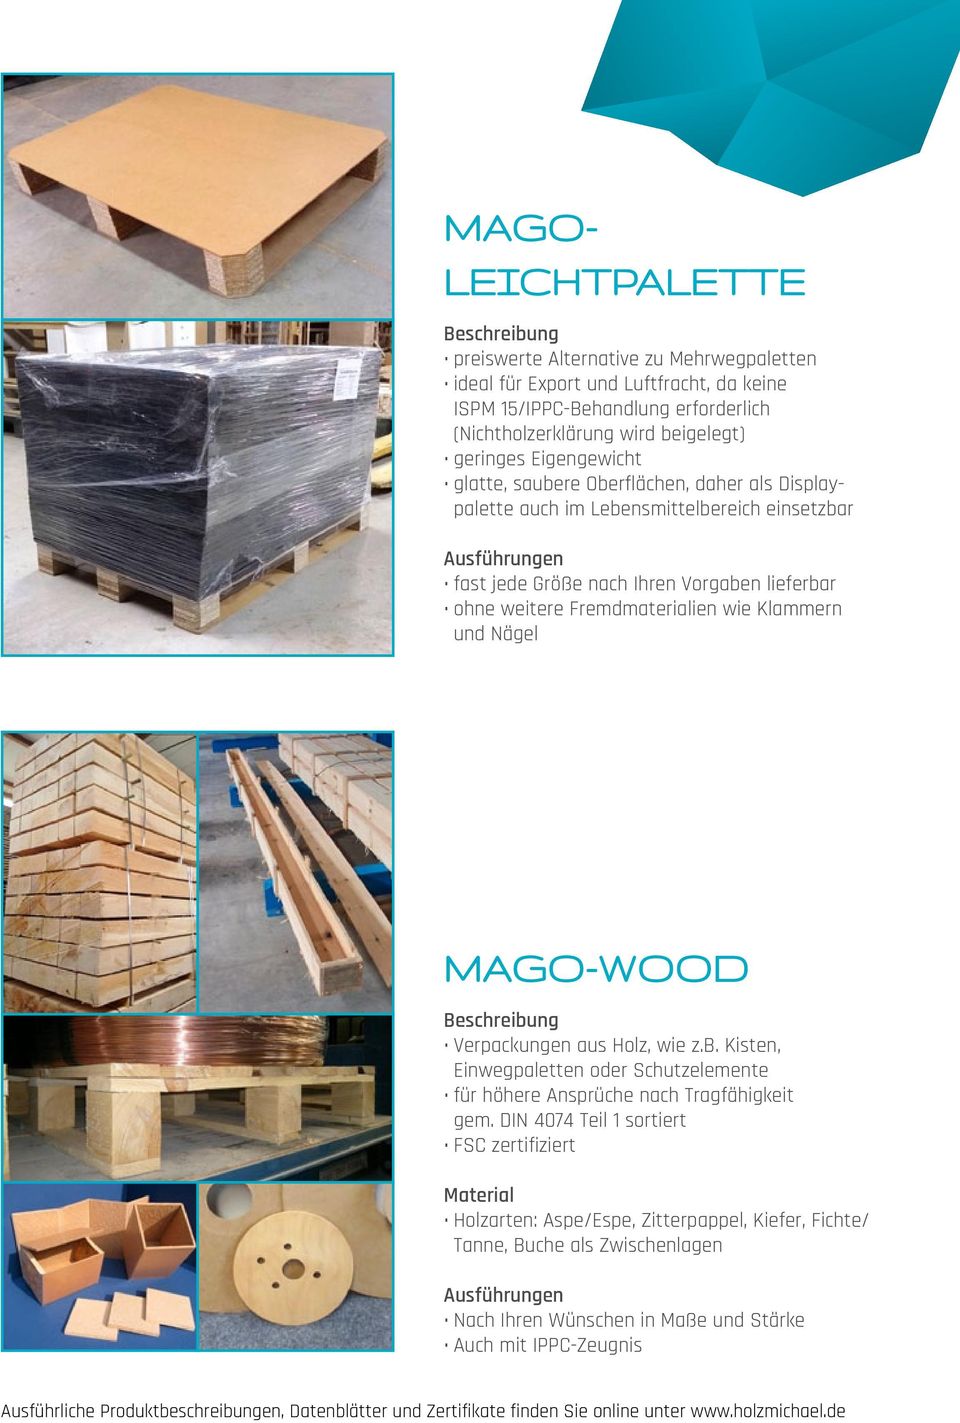 Mago-Wood Verpackungen aus Holz, wie z.b. Kisten, Einwegpaletten oder Schutzelemente für höhere Ansprüche nach Tragfähigkeit gem.